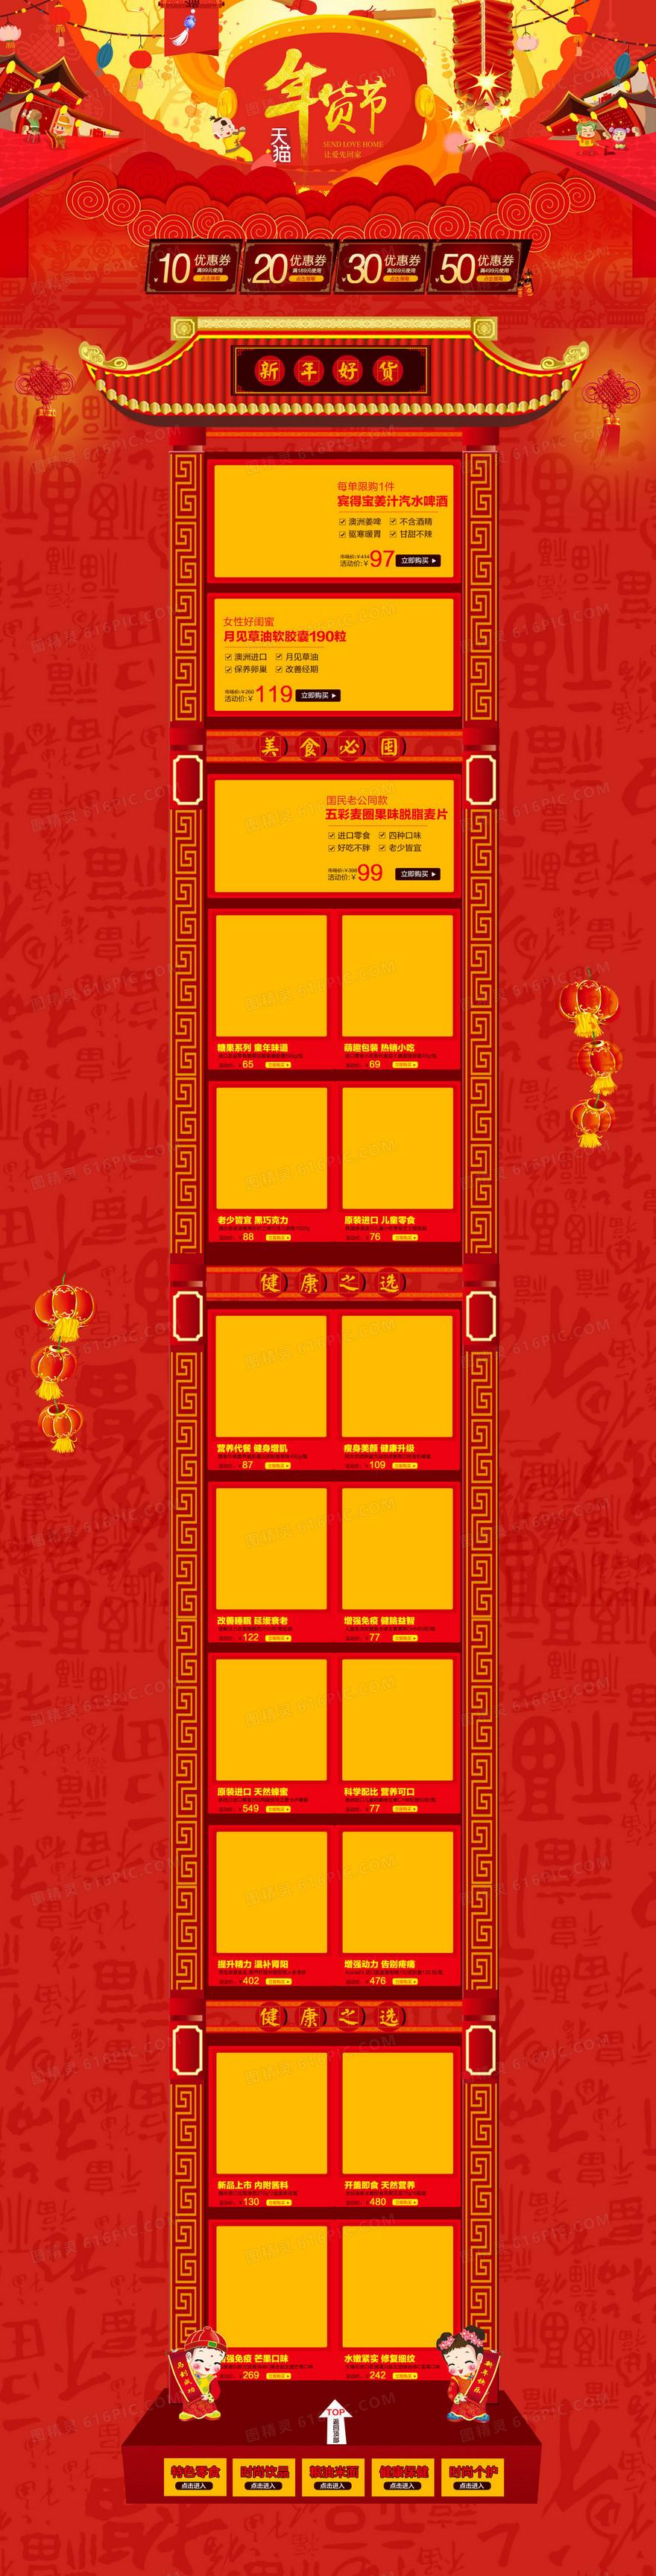 红色狂欢天猫年货节食品店铺背景背景